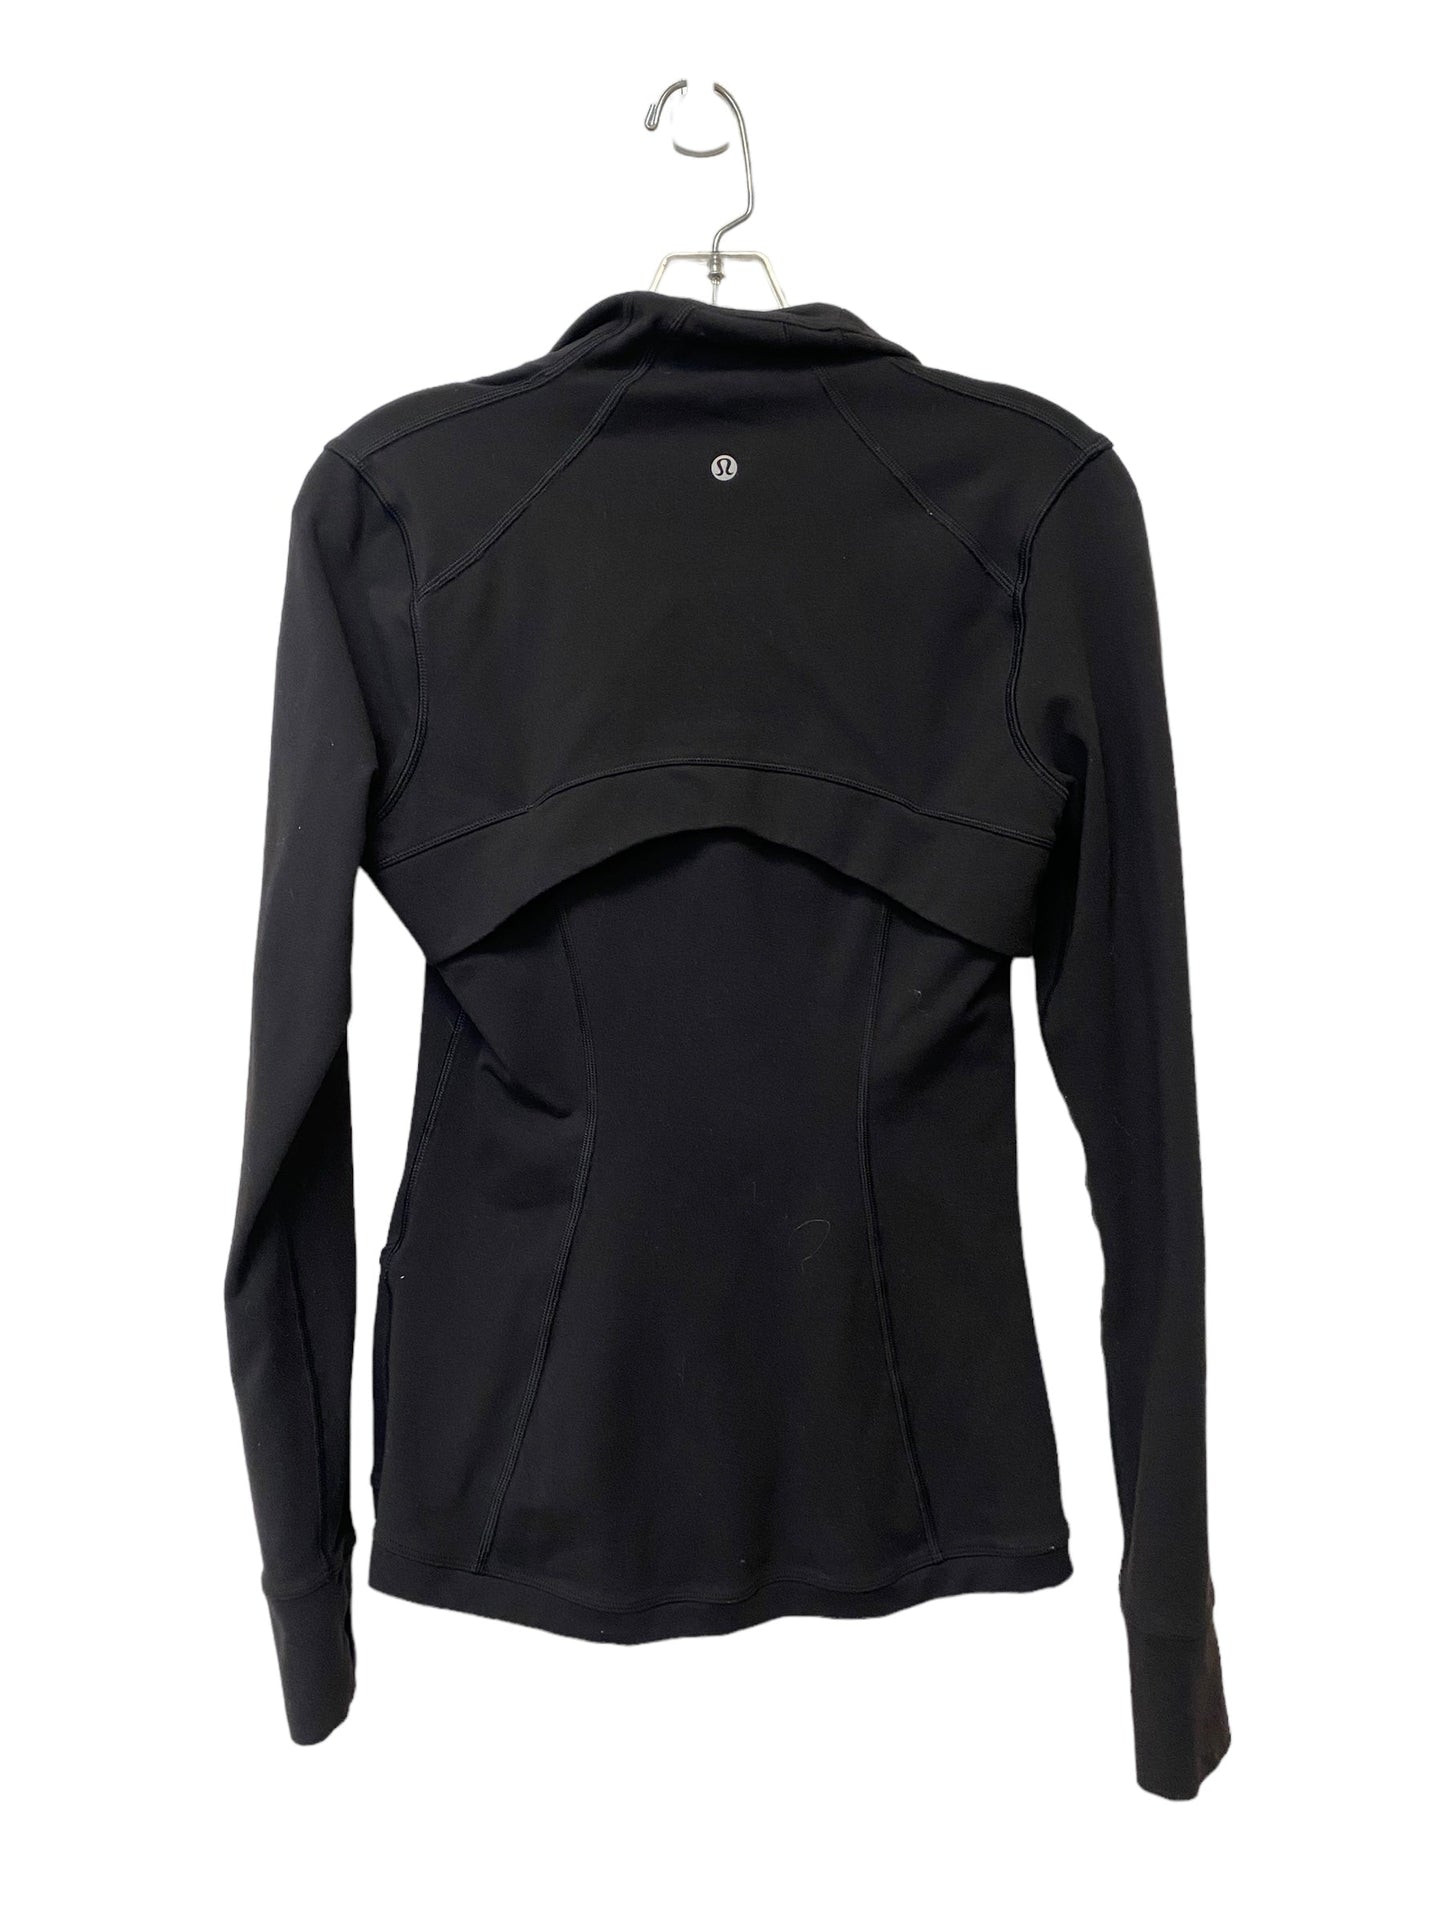 Black Athletic Jacket Lululemon, Size S